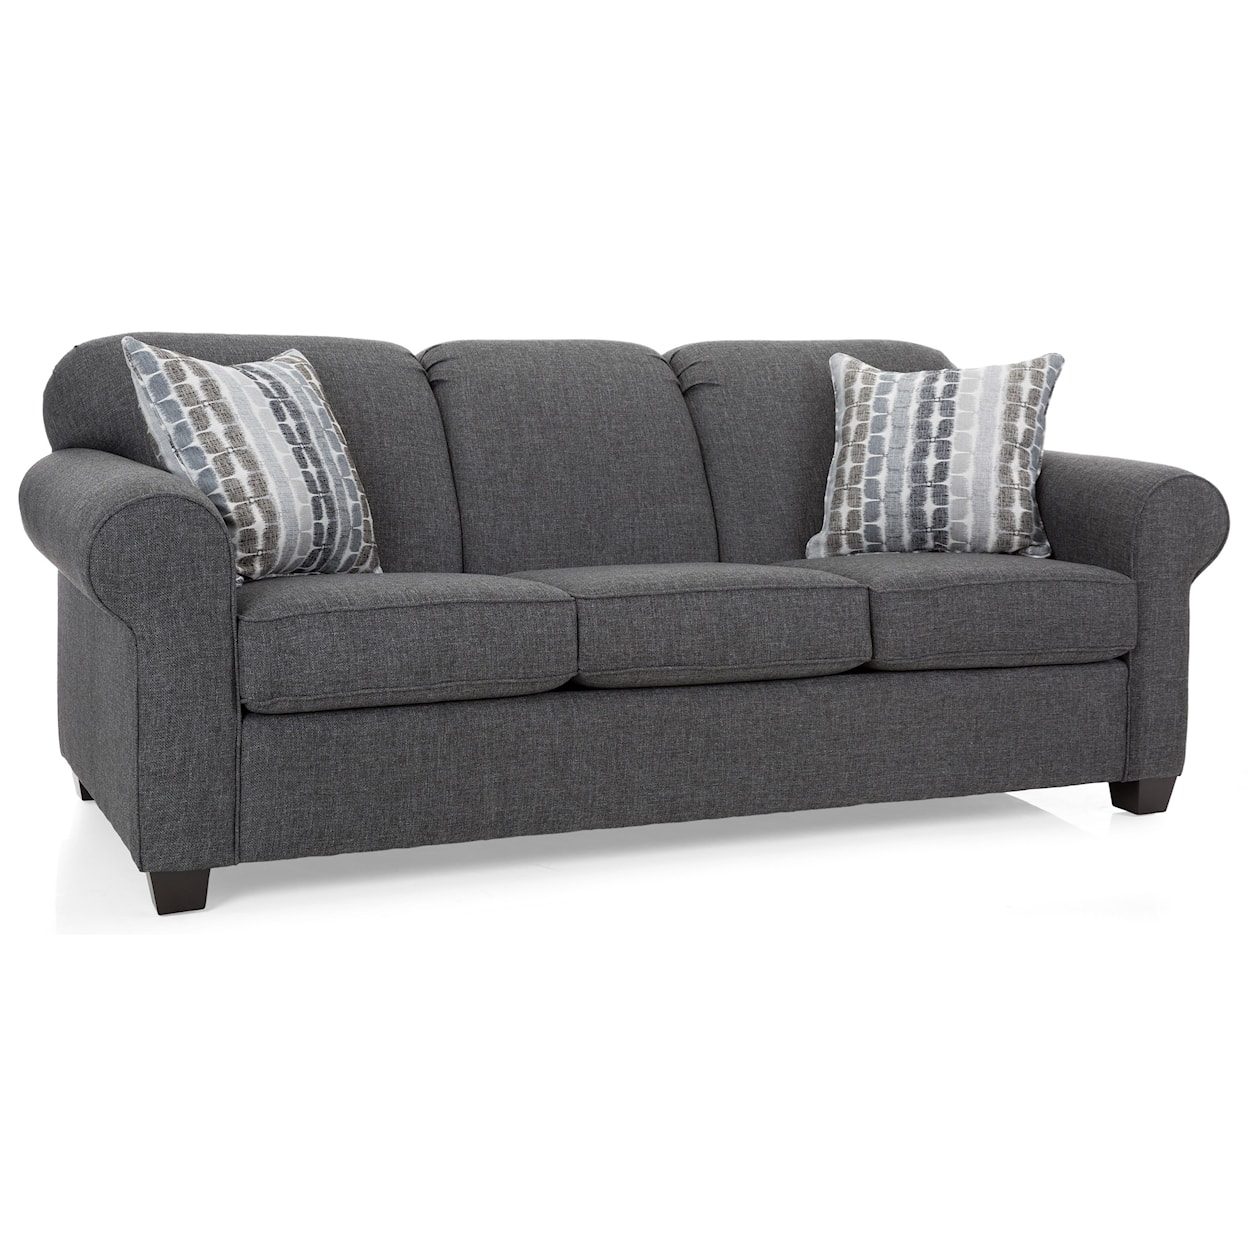 Decor-Rest 2455 Contemporary Sofa